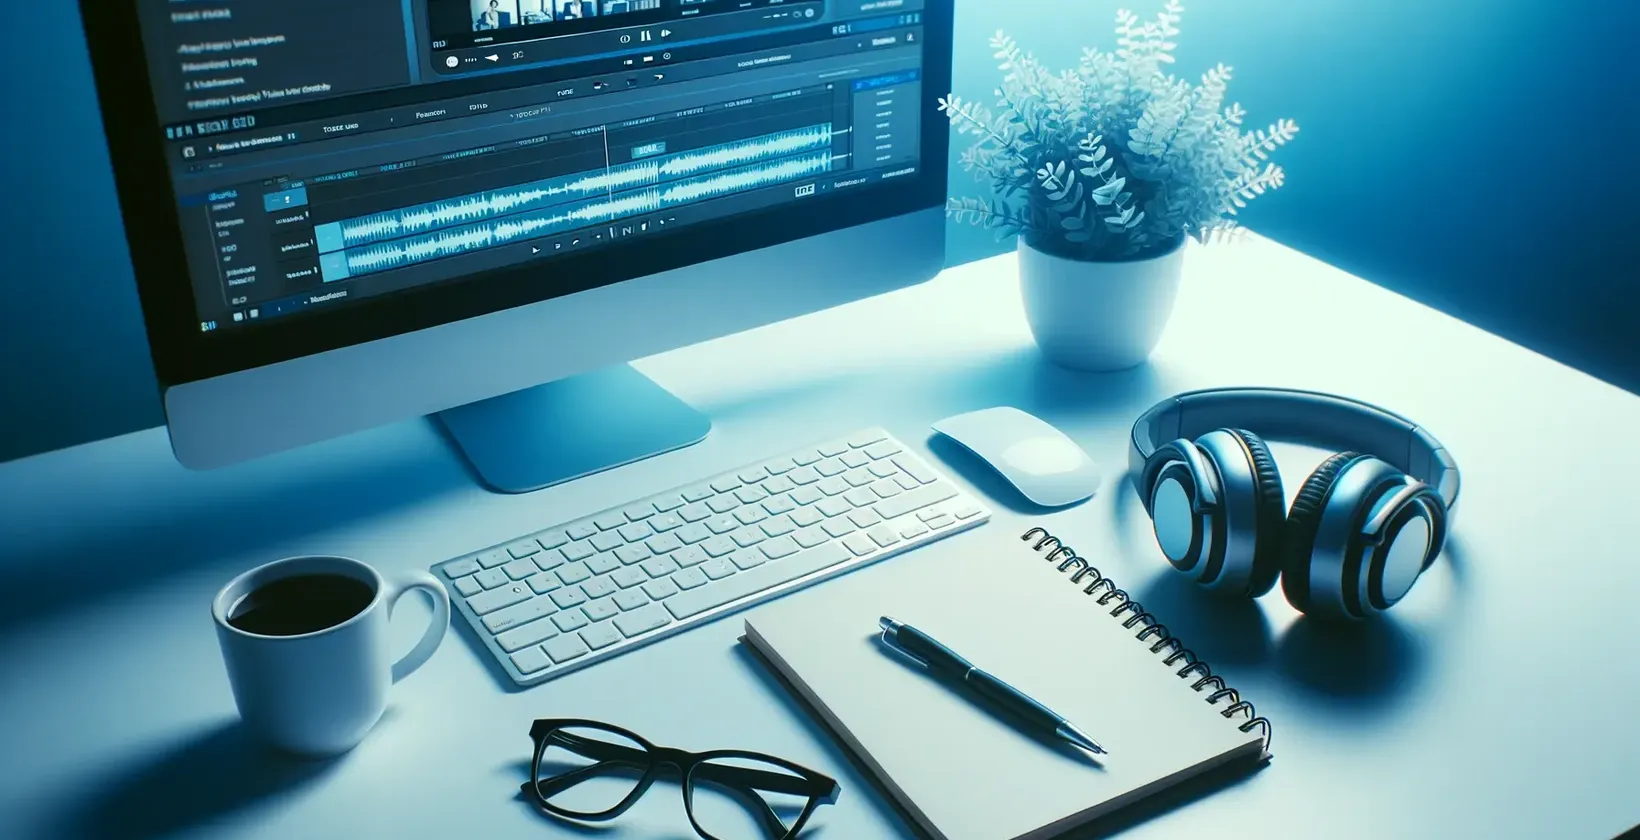 Área de trabalho com computador exibindo software de transcrição de áudio, fones de ouvido, bloco de notas, óculos e caneca.